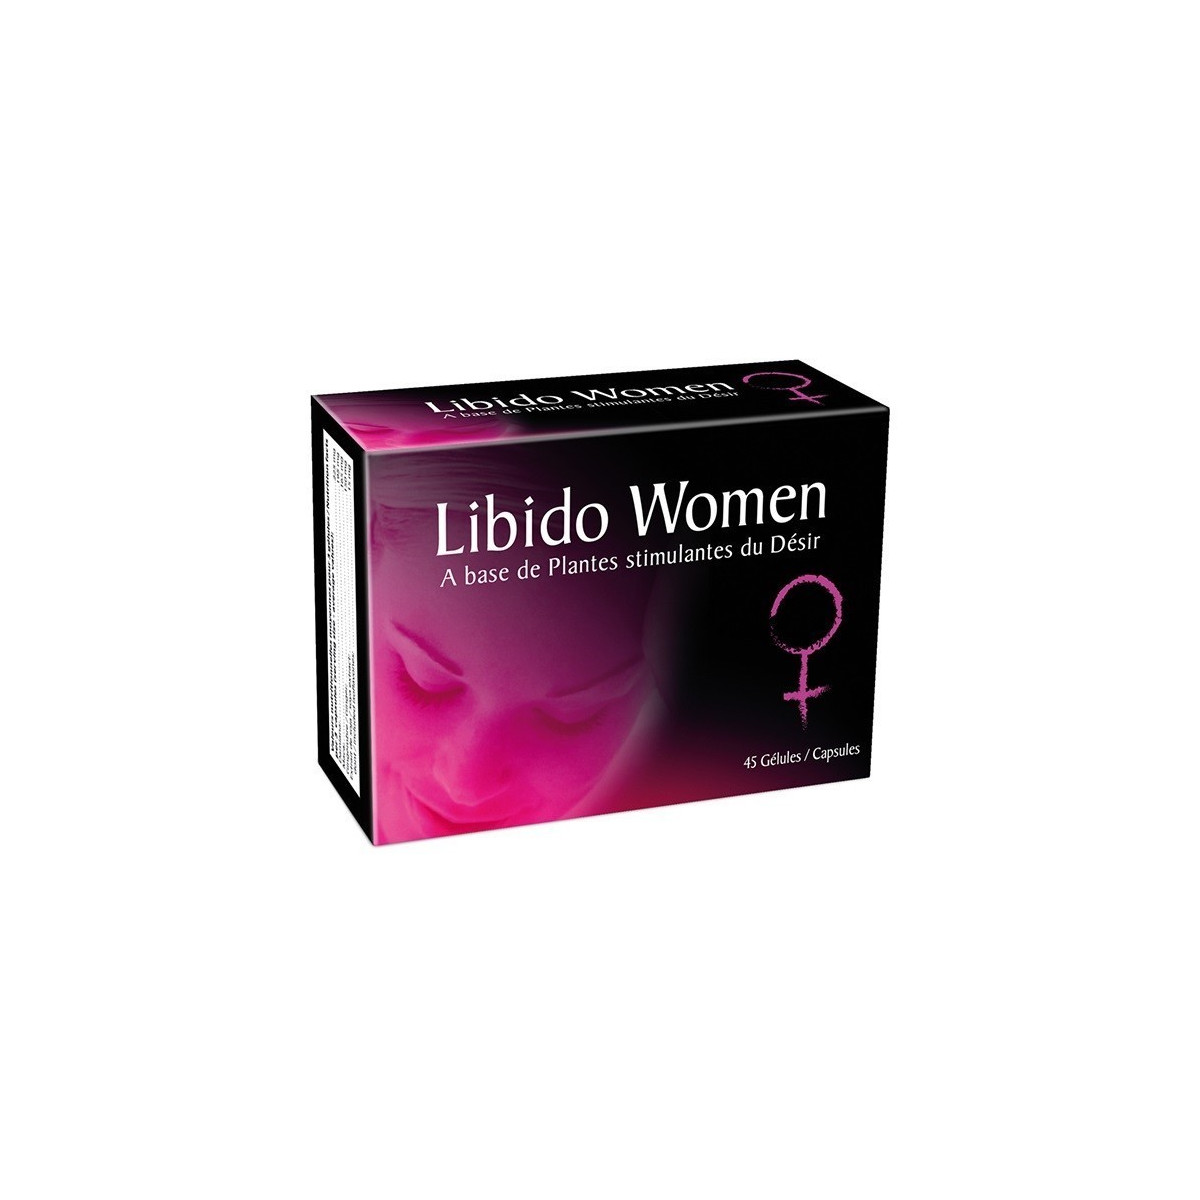 Libido Women - 45 Gélules